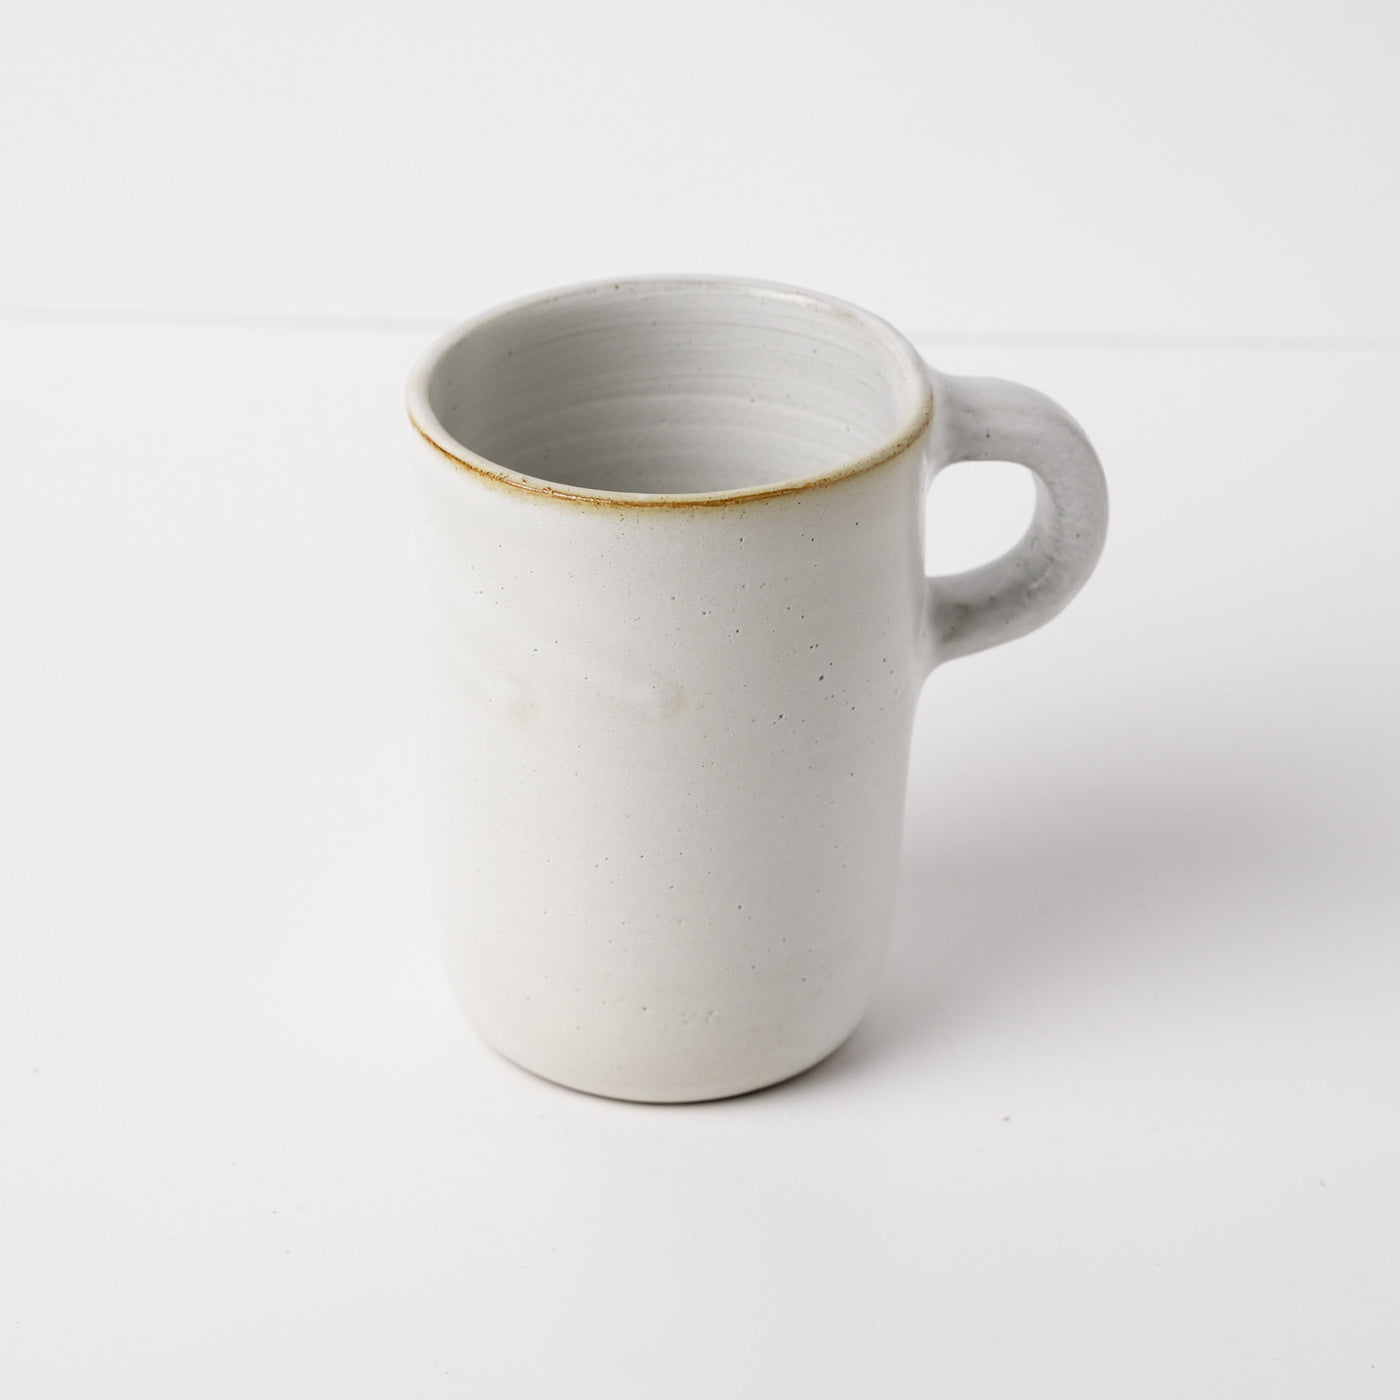 Ivory white ceramic mug by Gaëlle Le Doledec